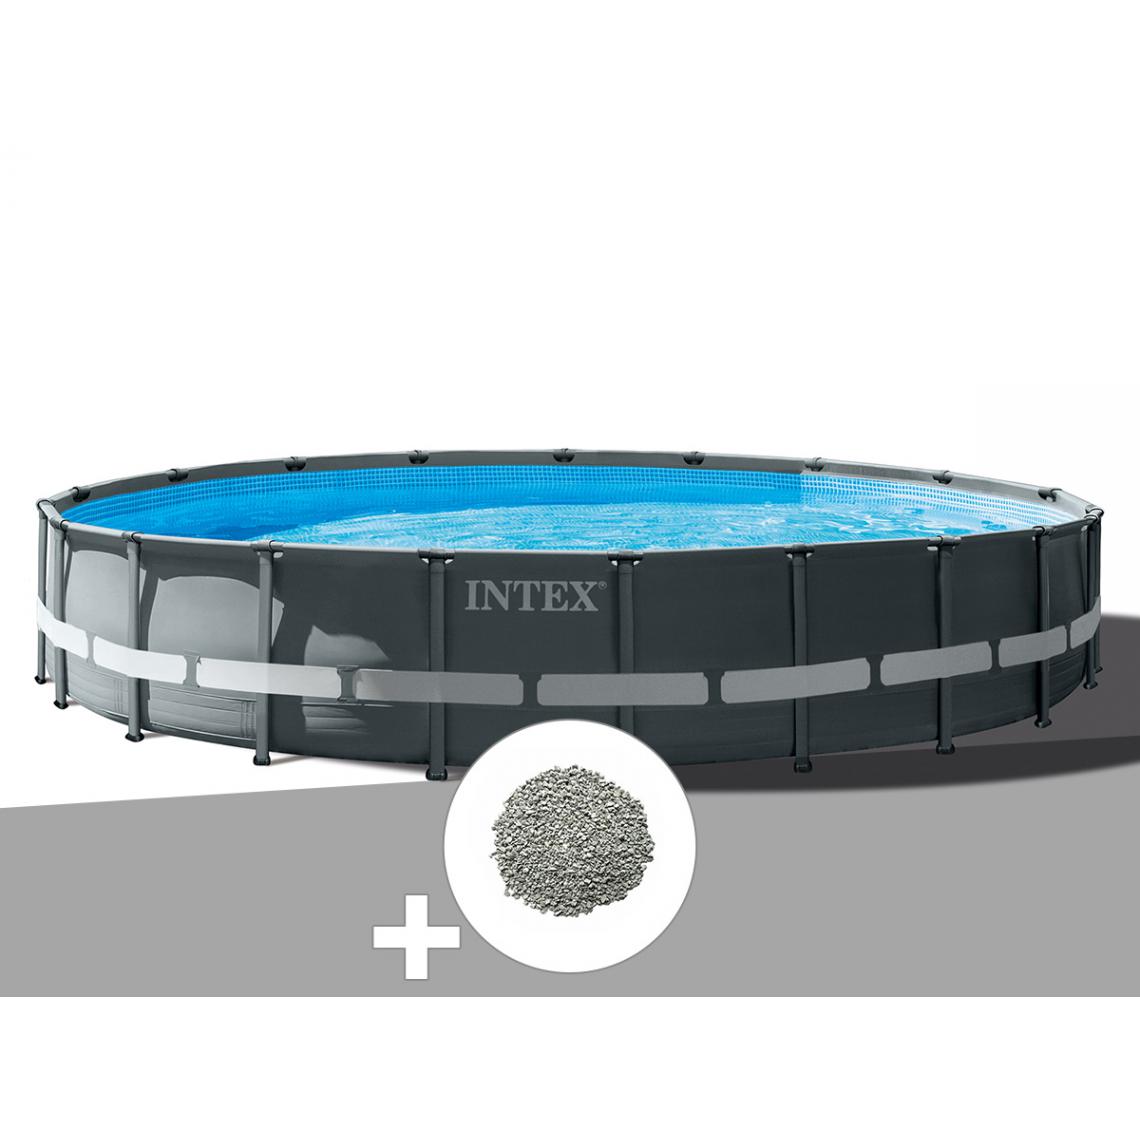 Intex - Kit piscine tubulaire Intex Ultra XTR Frame ronde 6,10 x 1,22 m + 20 kg de zéolite - Piscine Tubulaire